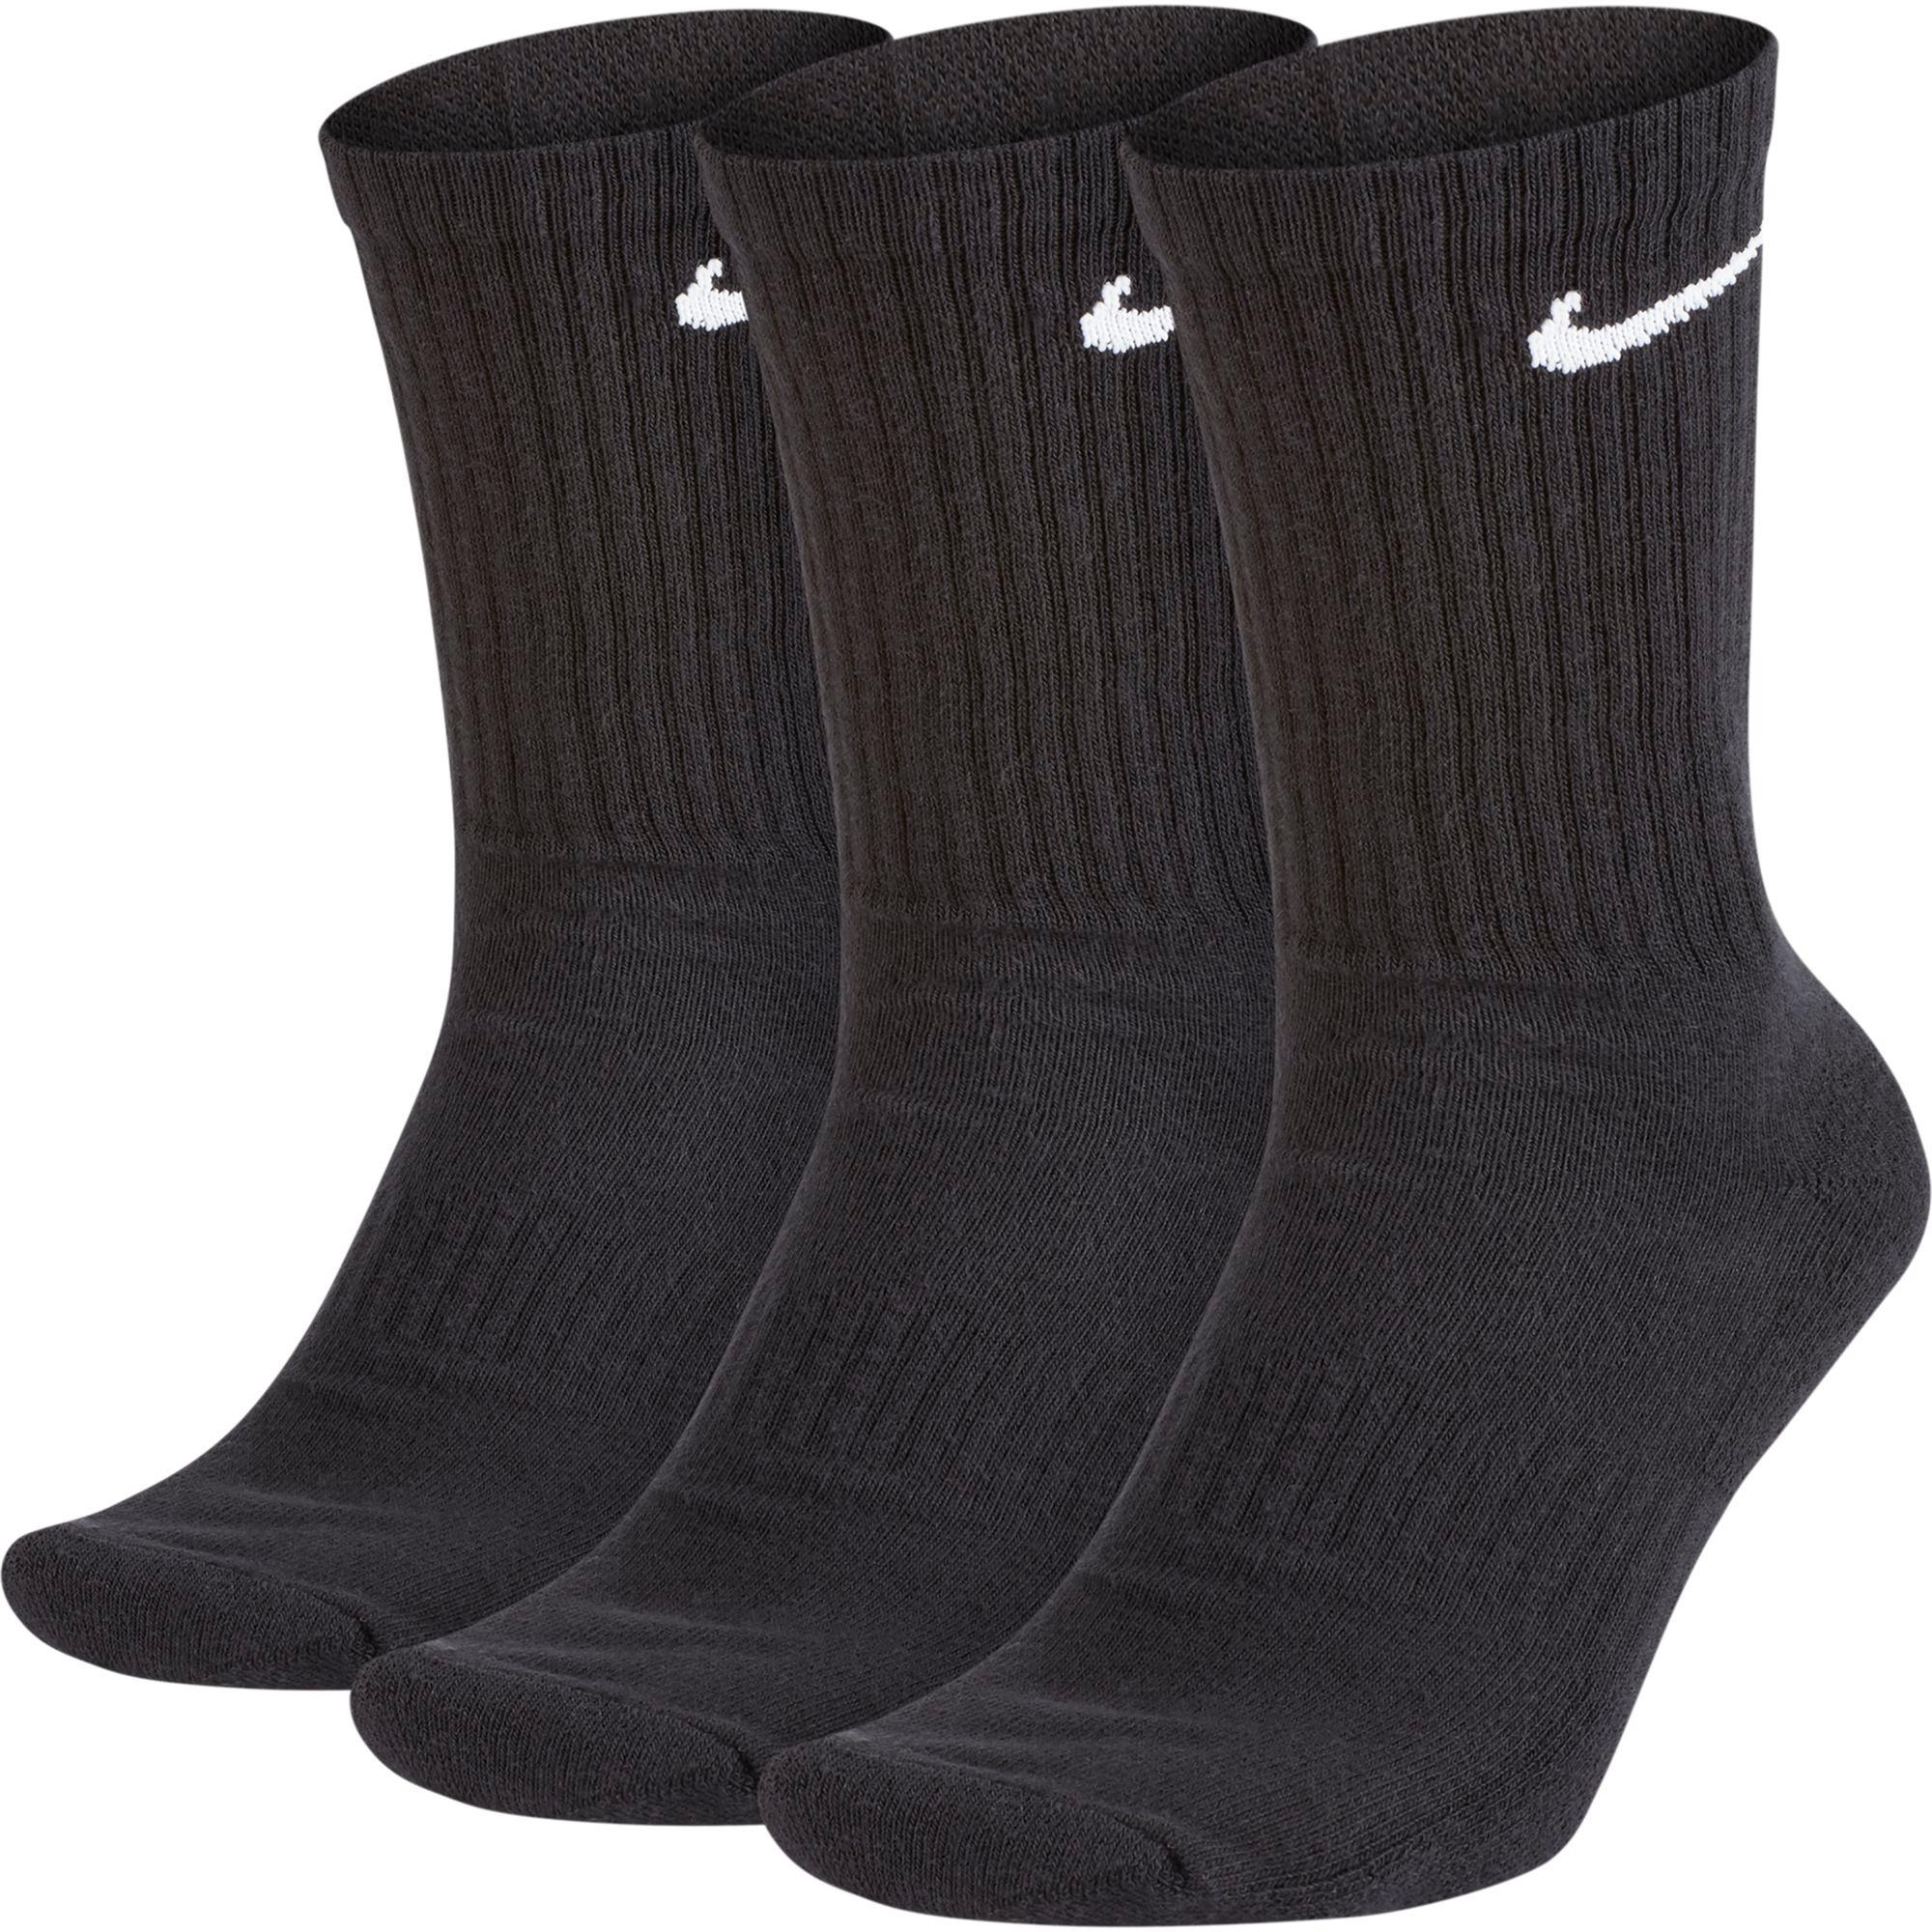 Nike Socken Jetzt Bei Sportscheck Online Kaufen